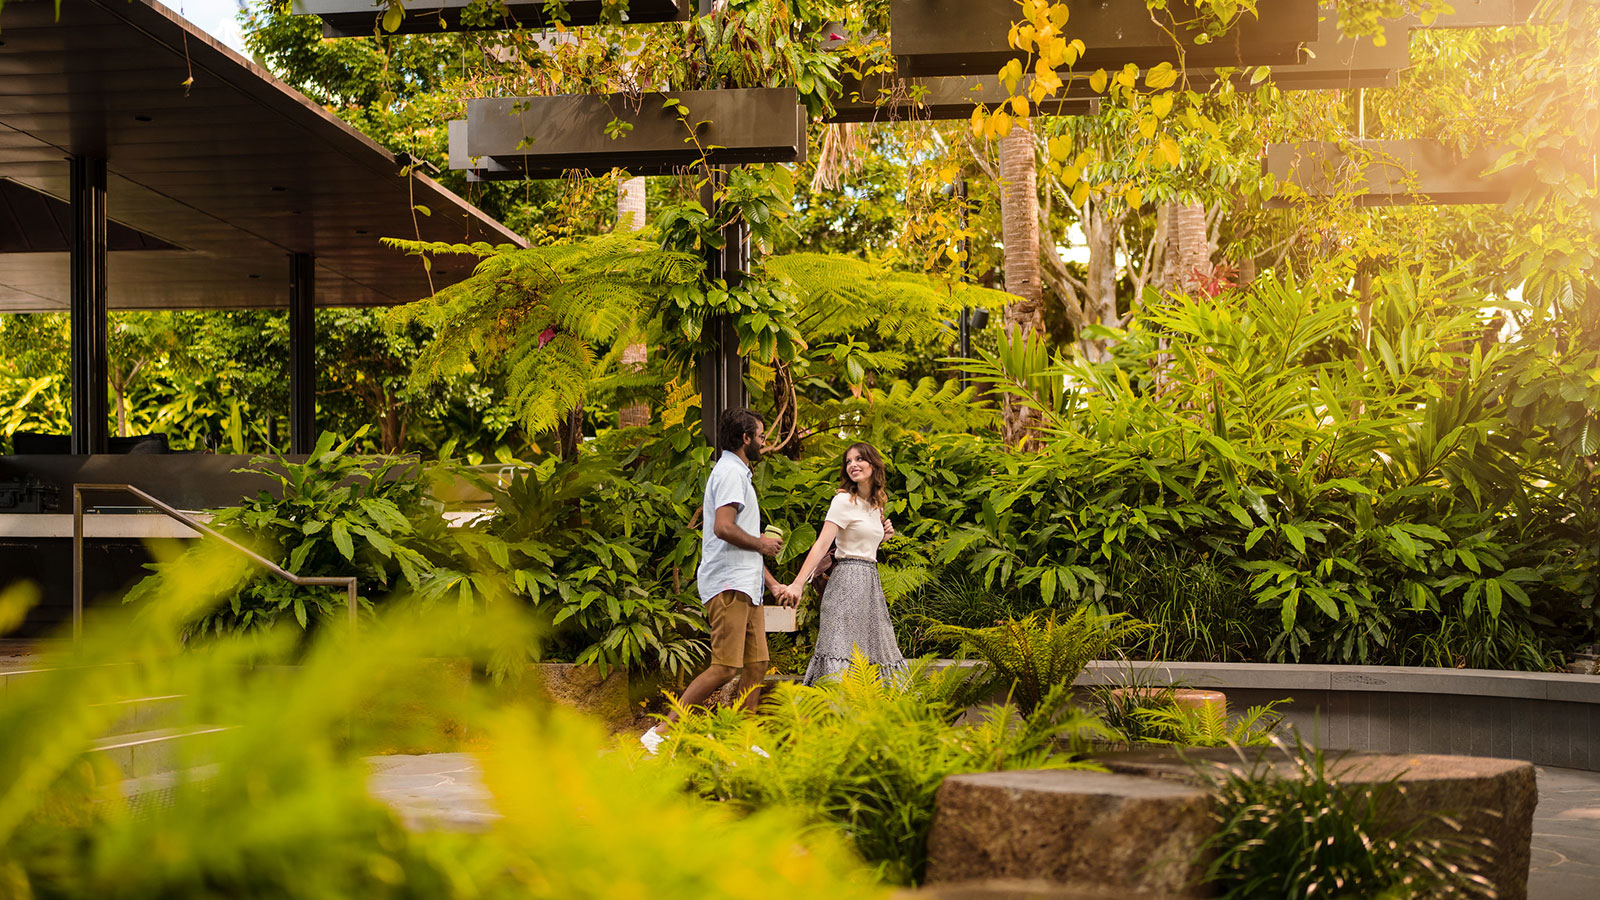 Couple walking through hanging garden at Riverside Green South Bank